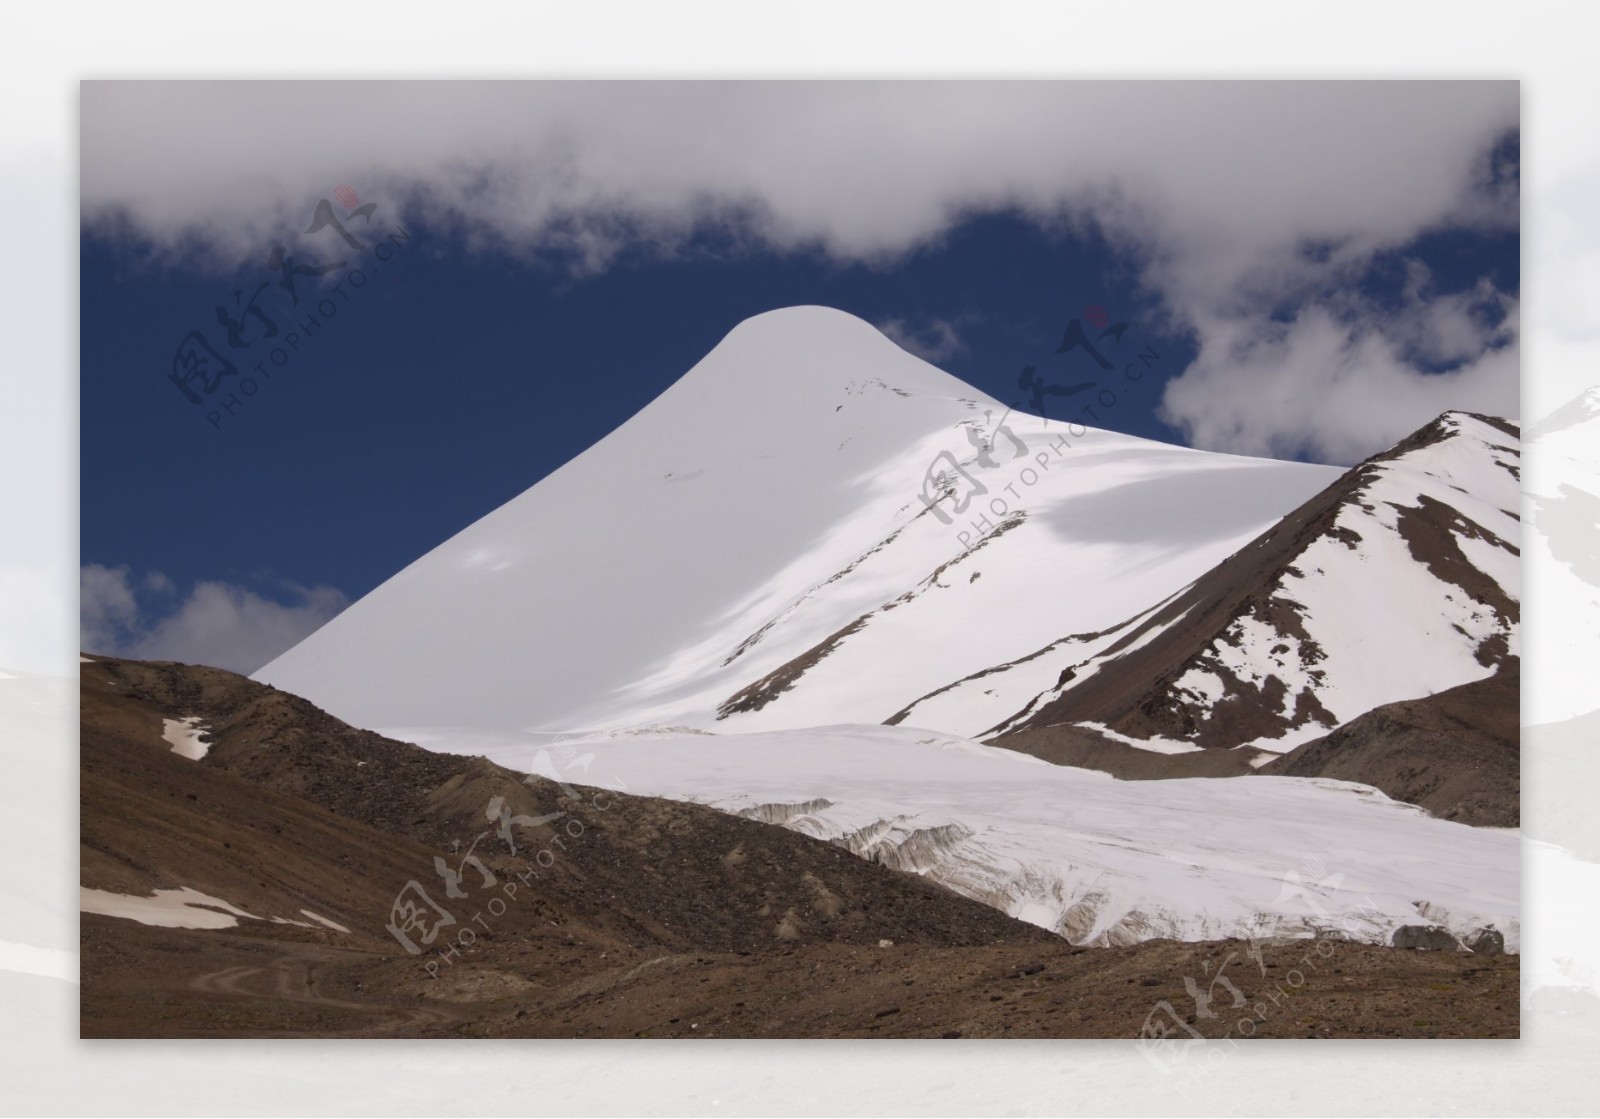 玉珠峰图片雪山风景图片